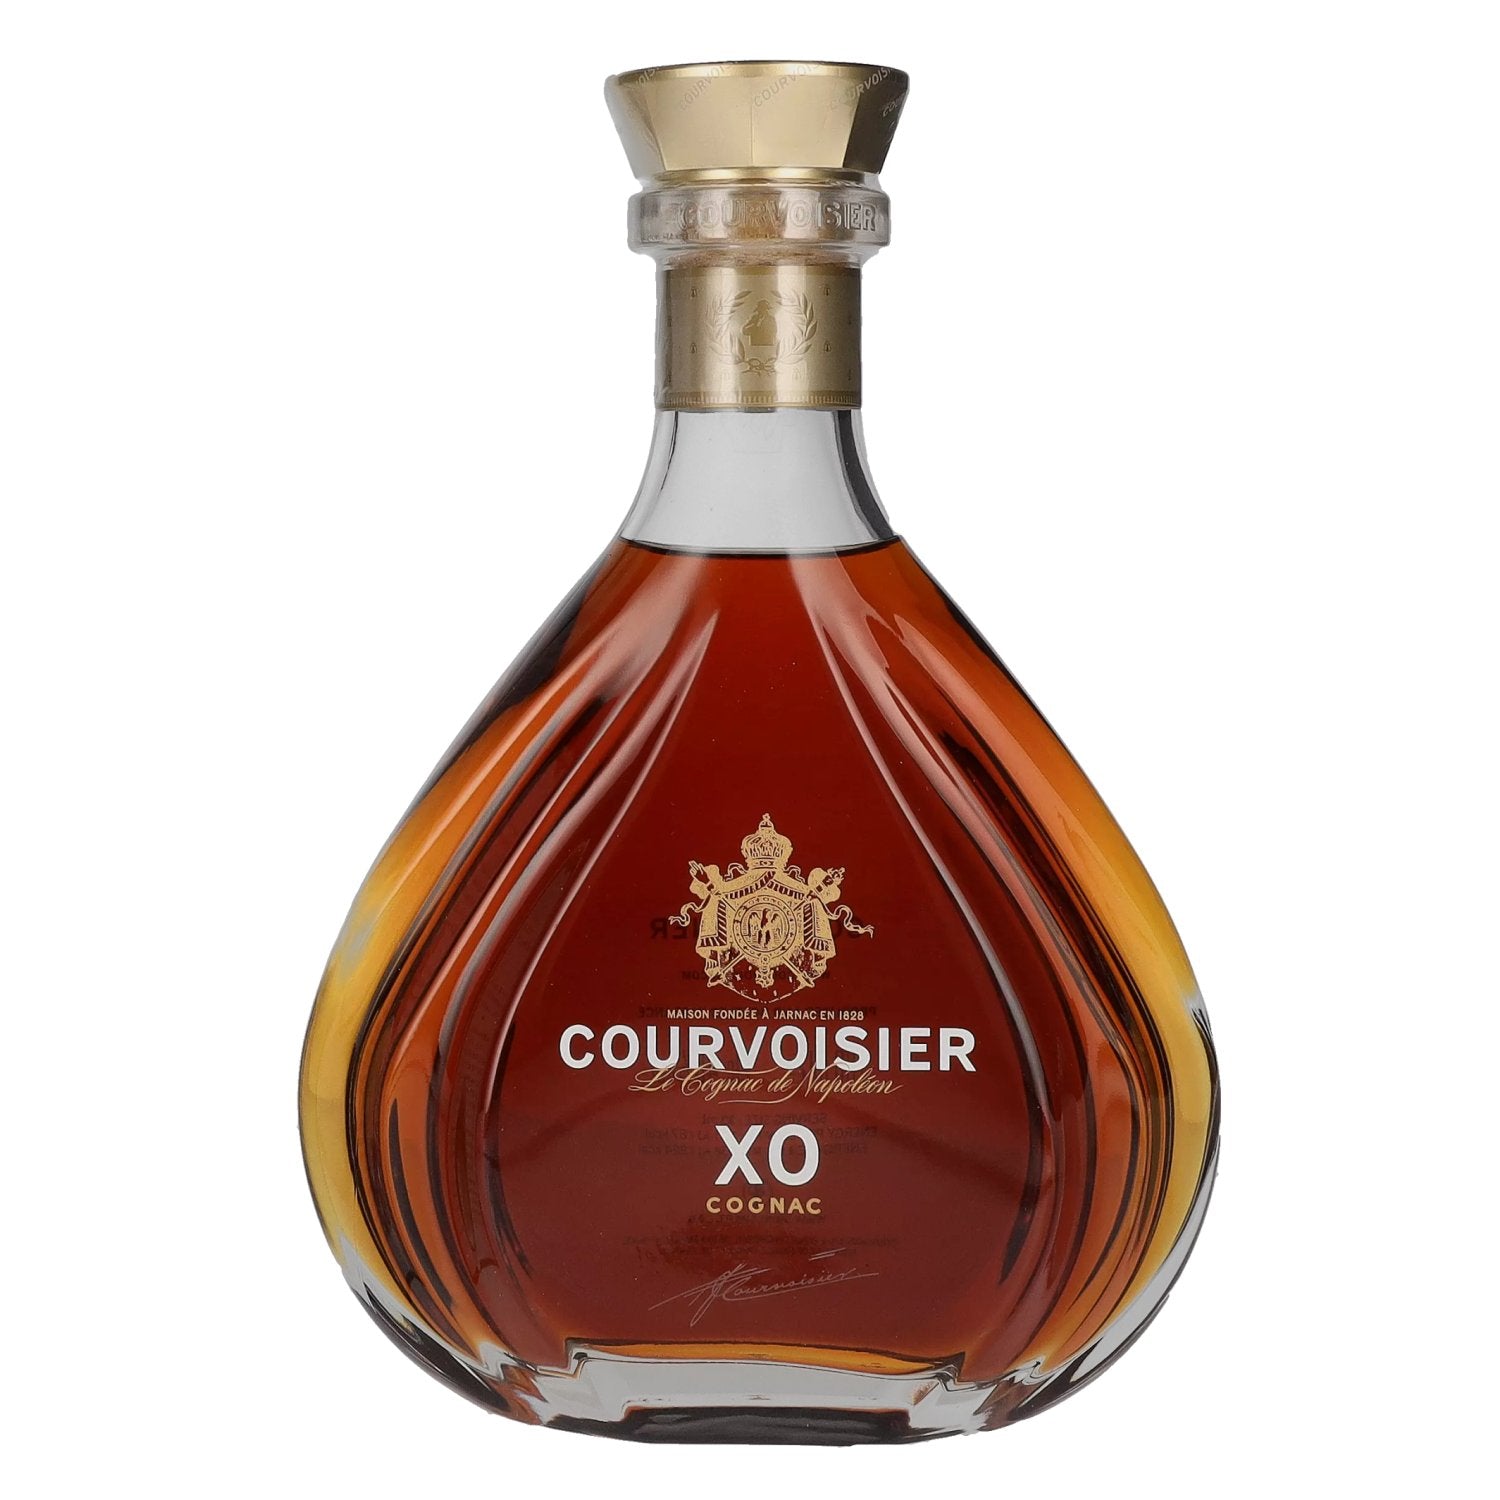 Courvoisier XO Le Cognac de Napoleon 40% Vol. 0,7l